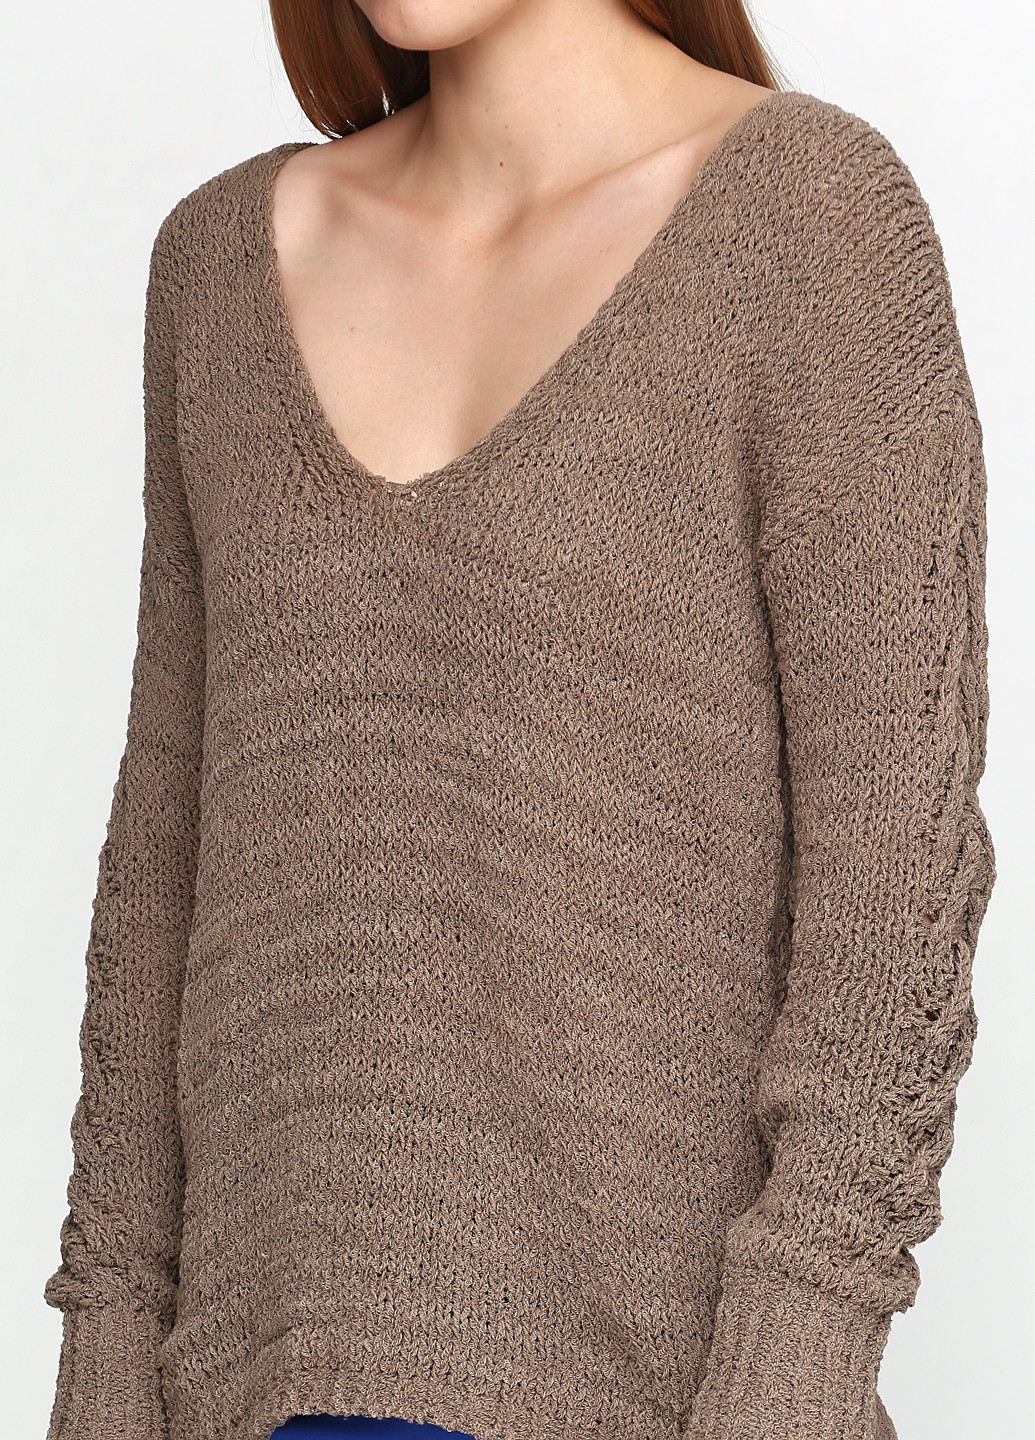 Бледно-коричневый демисезонный пуловер пуловер United Colors of Benetton